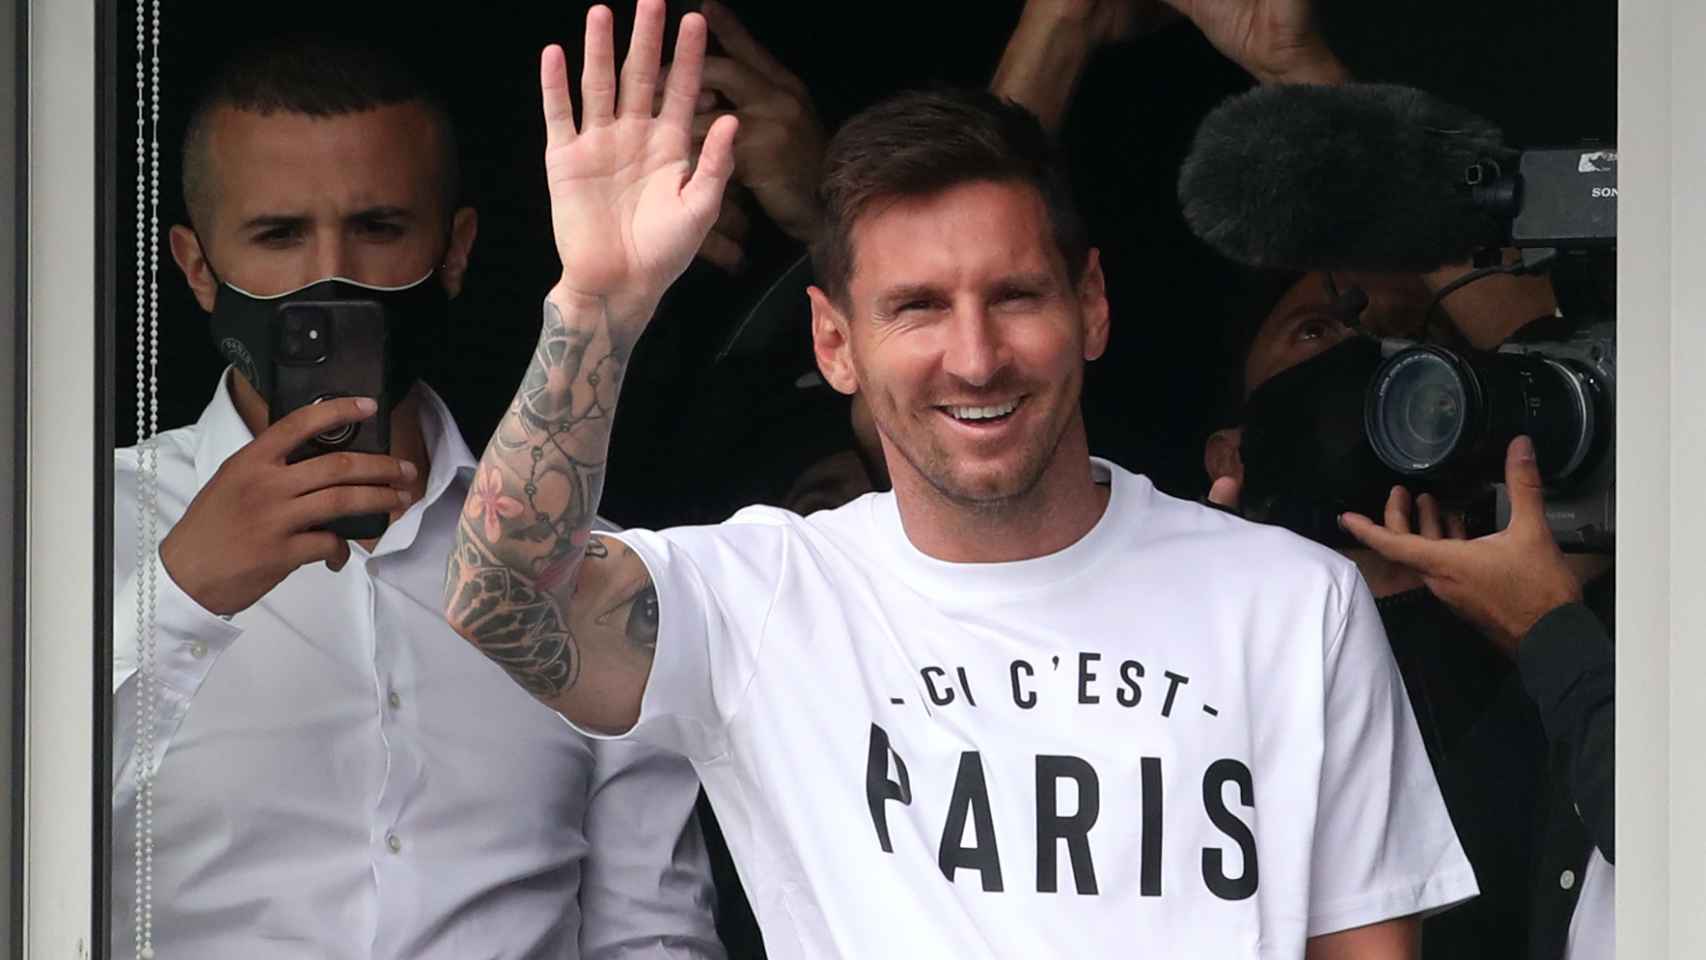 Leo Messi, en su llegada a París para firmar su nuevo contrato con el PSG